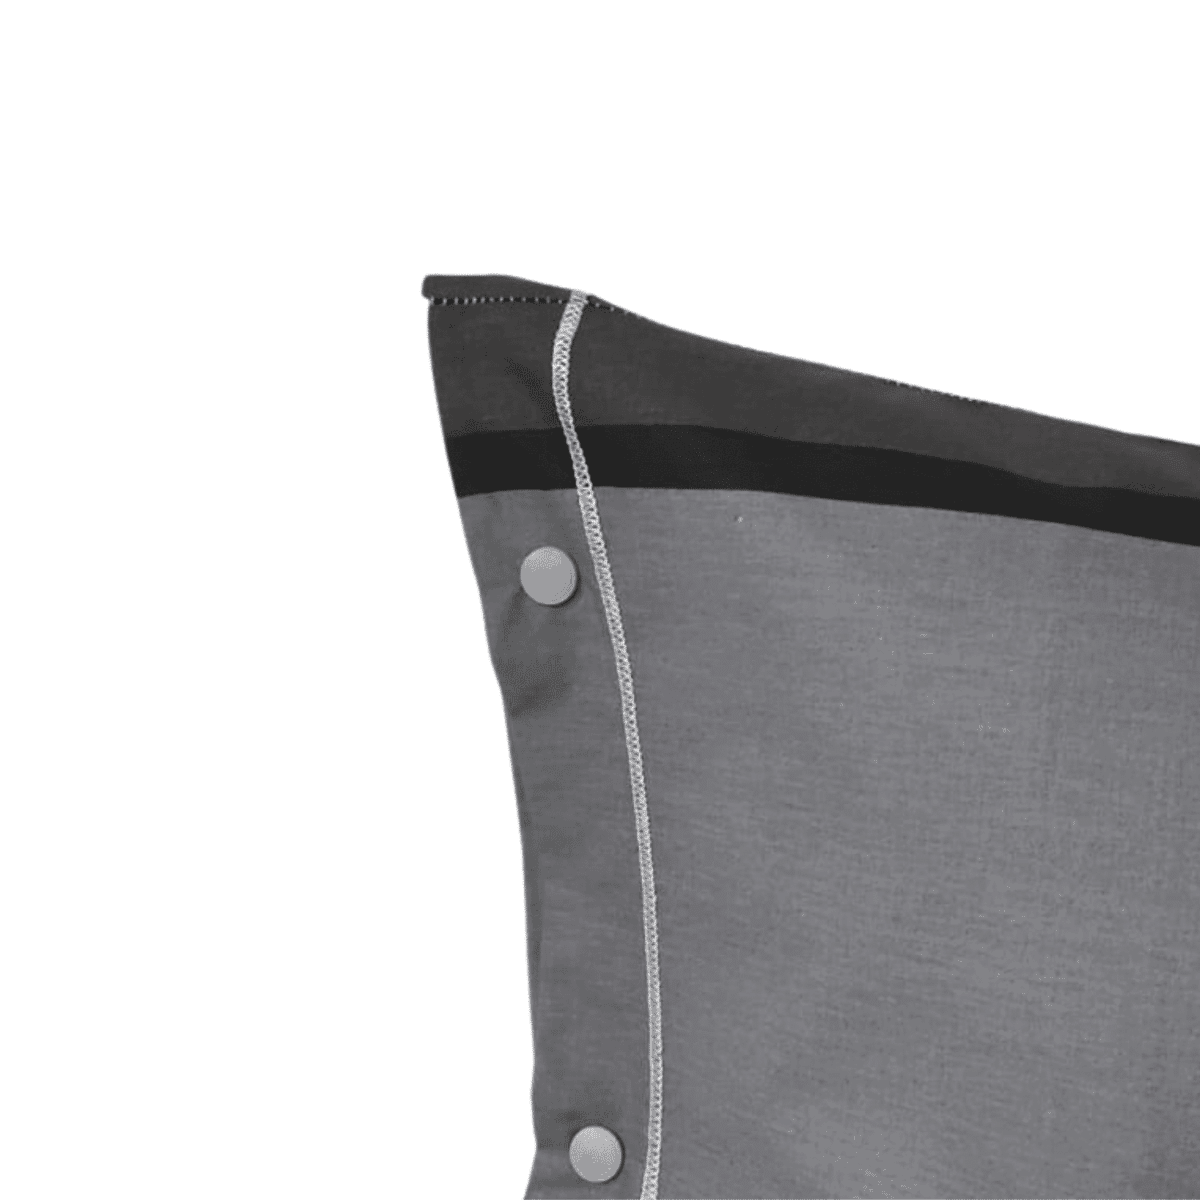 fascia-grigio-completo-lenzuola-puro-cotone-made-in-italy-quadrifoglio-grigio-sfumato-fascioni-geometrico-moderno-dettaglio-federe-bottoni